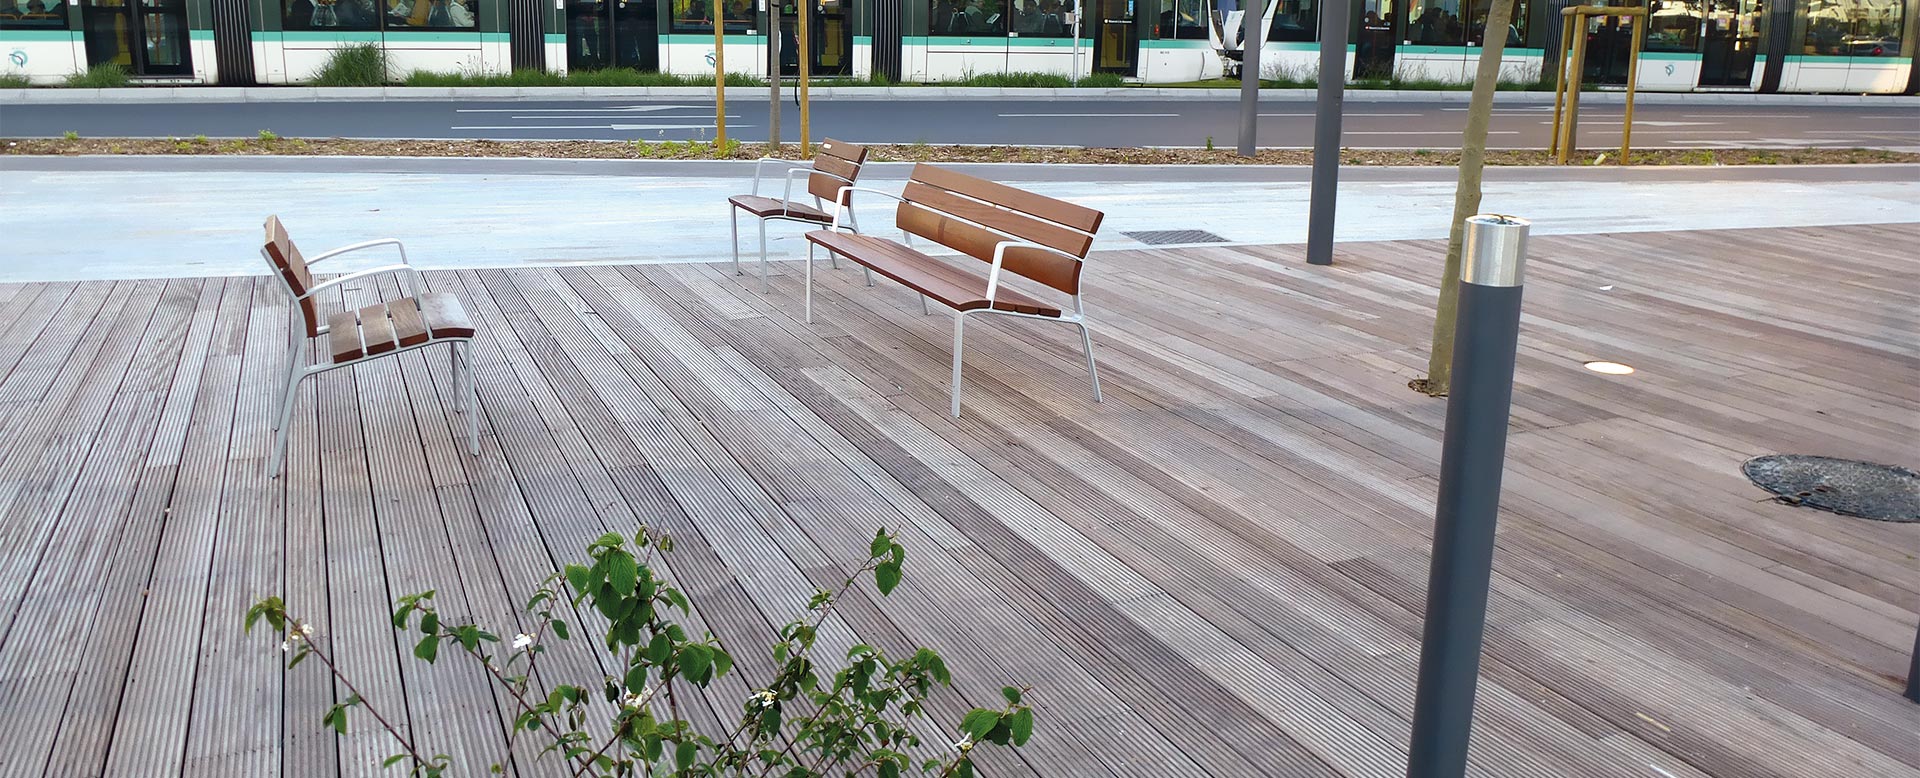 Platelage en bois pour espace public